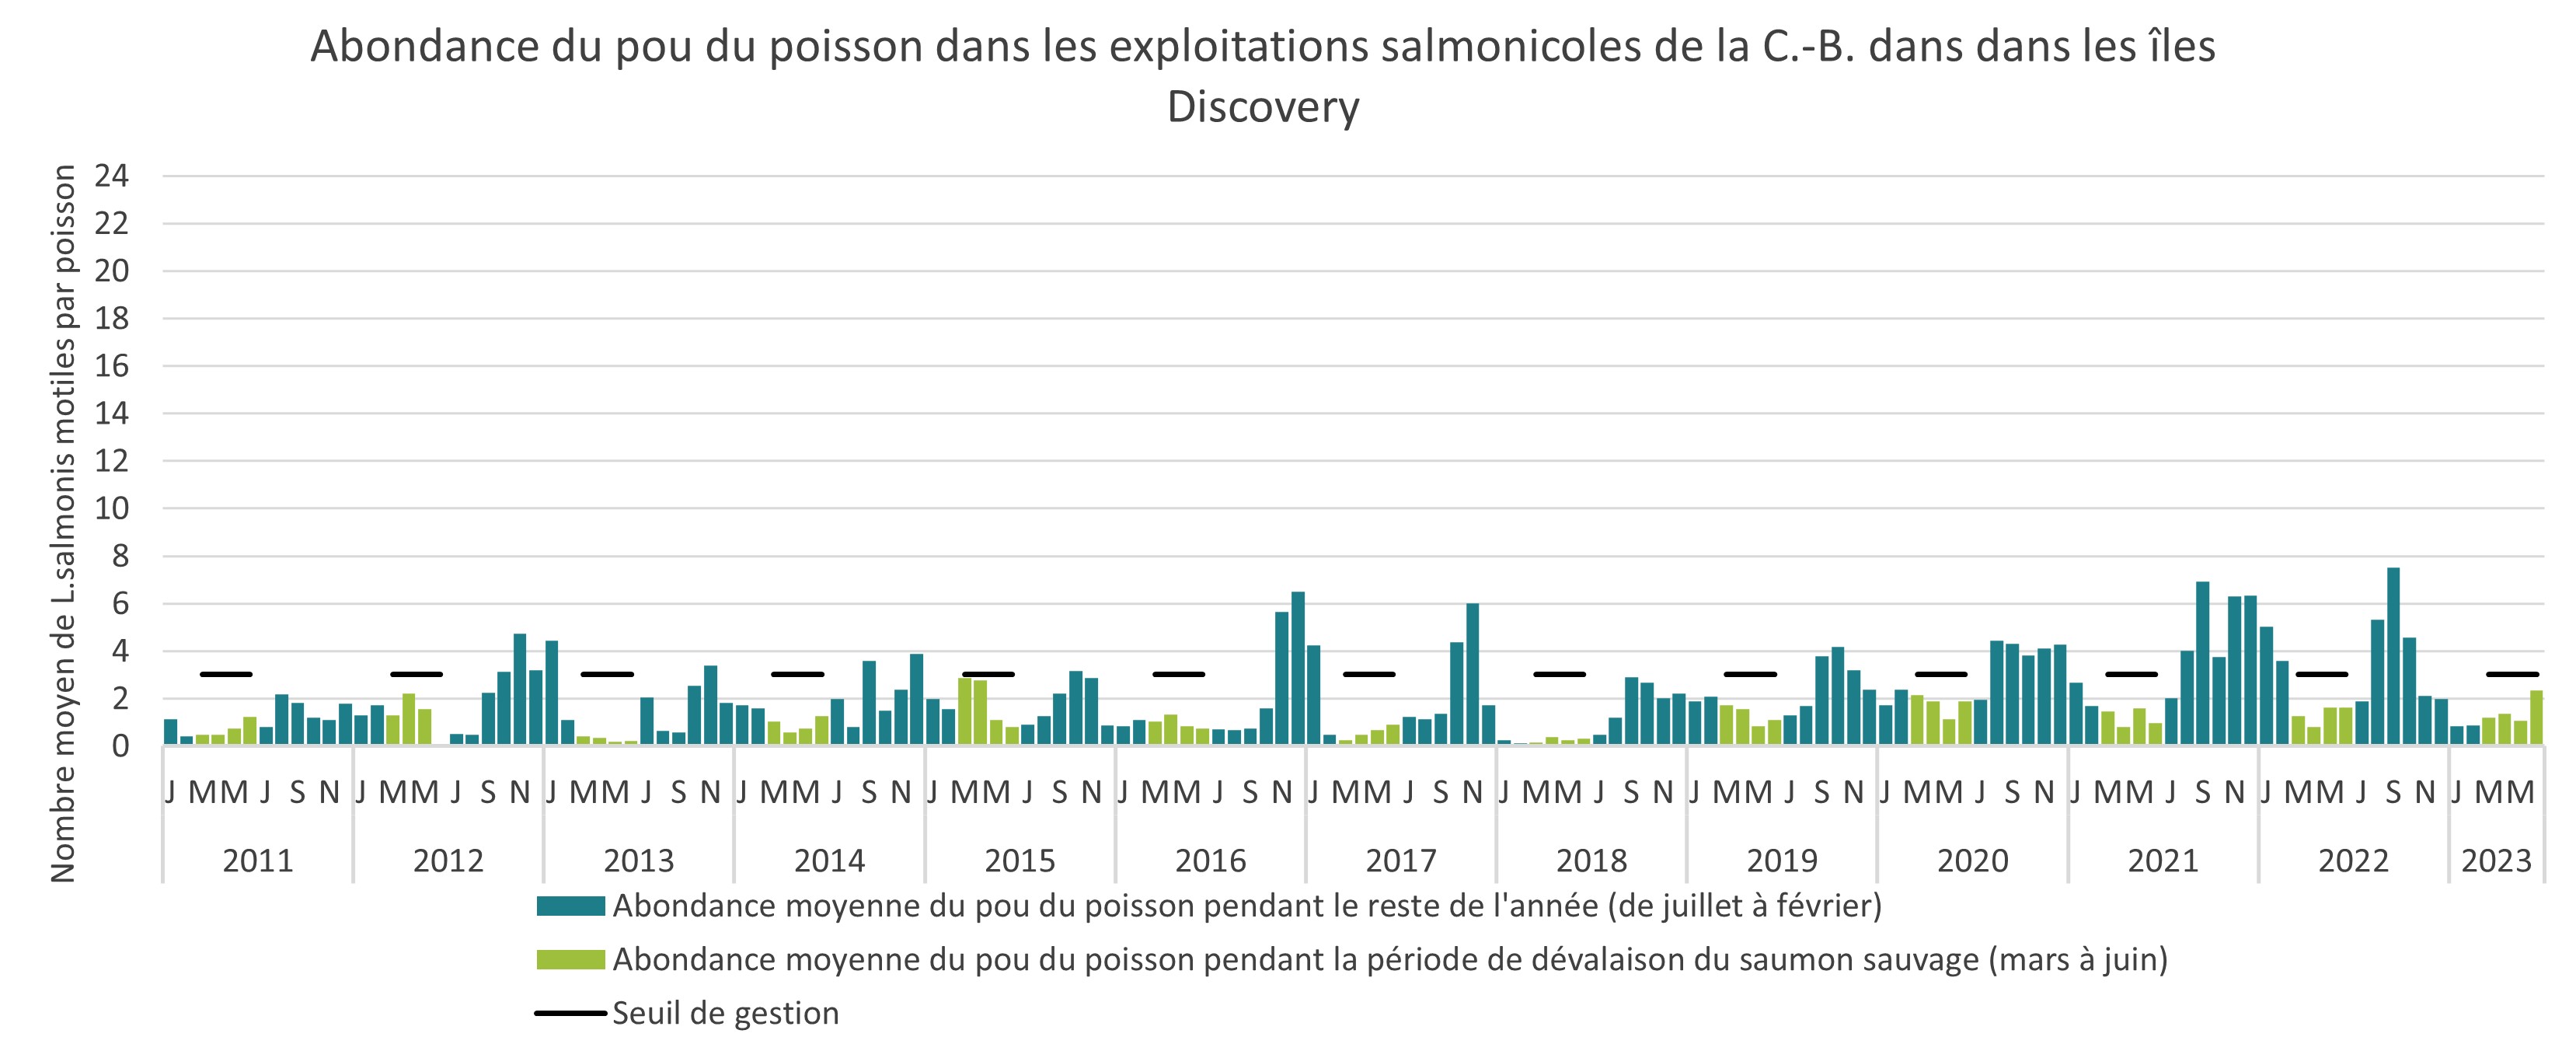 Abondance du pou du poisson dans les exploitations salmonicoles de la C,-B, dans dans les îles Discovery, 2011 à 2022